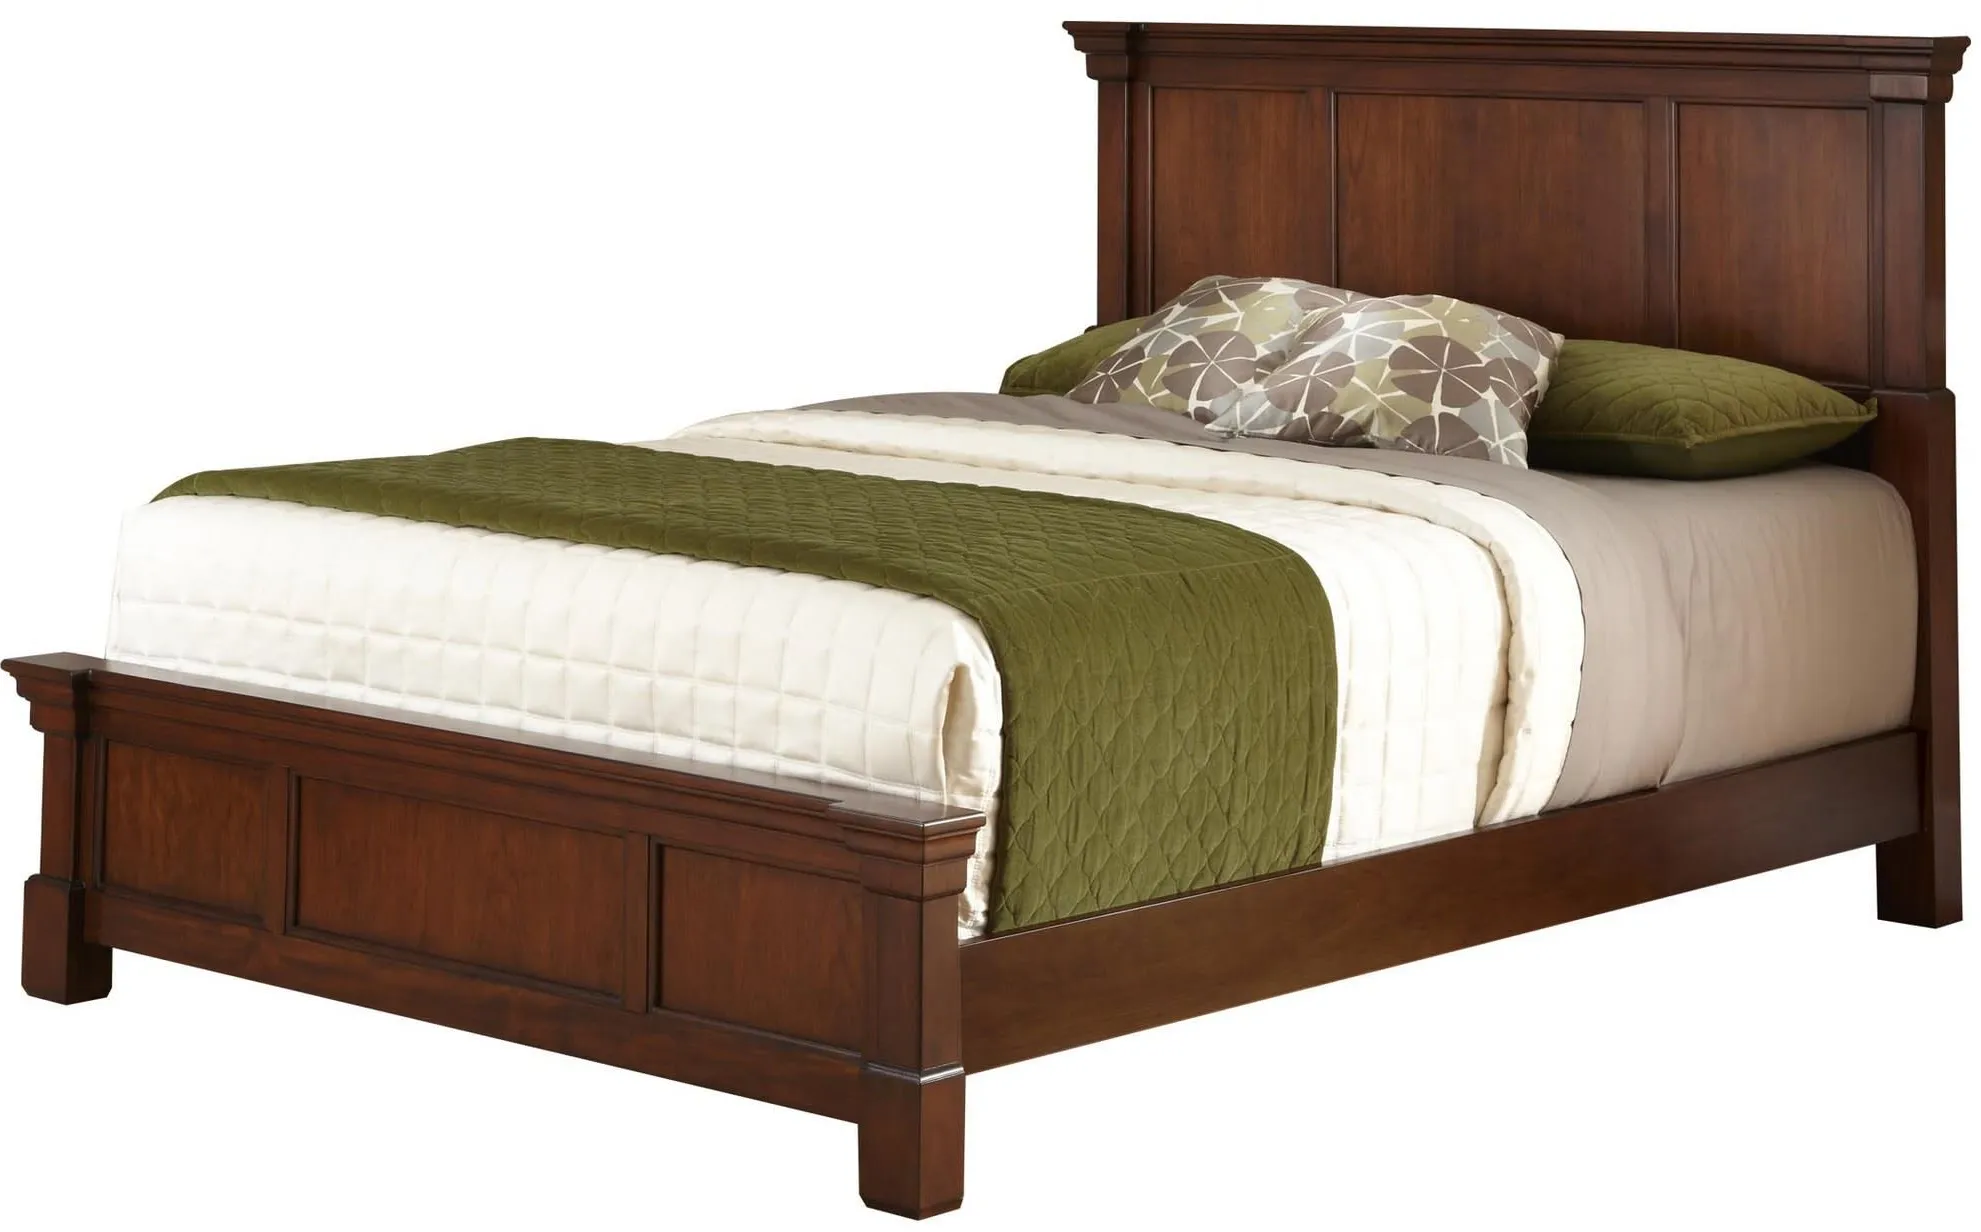 homestyles® Aspen Brown Queen Bed